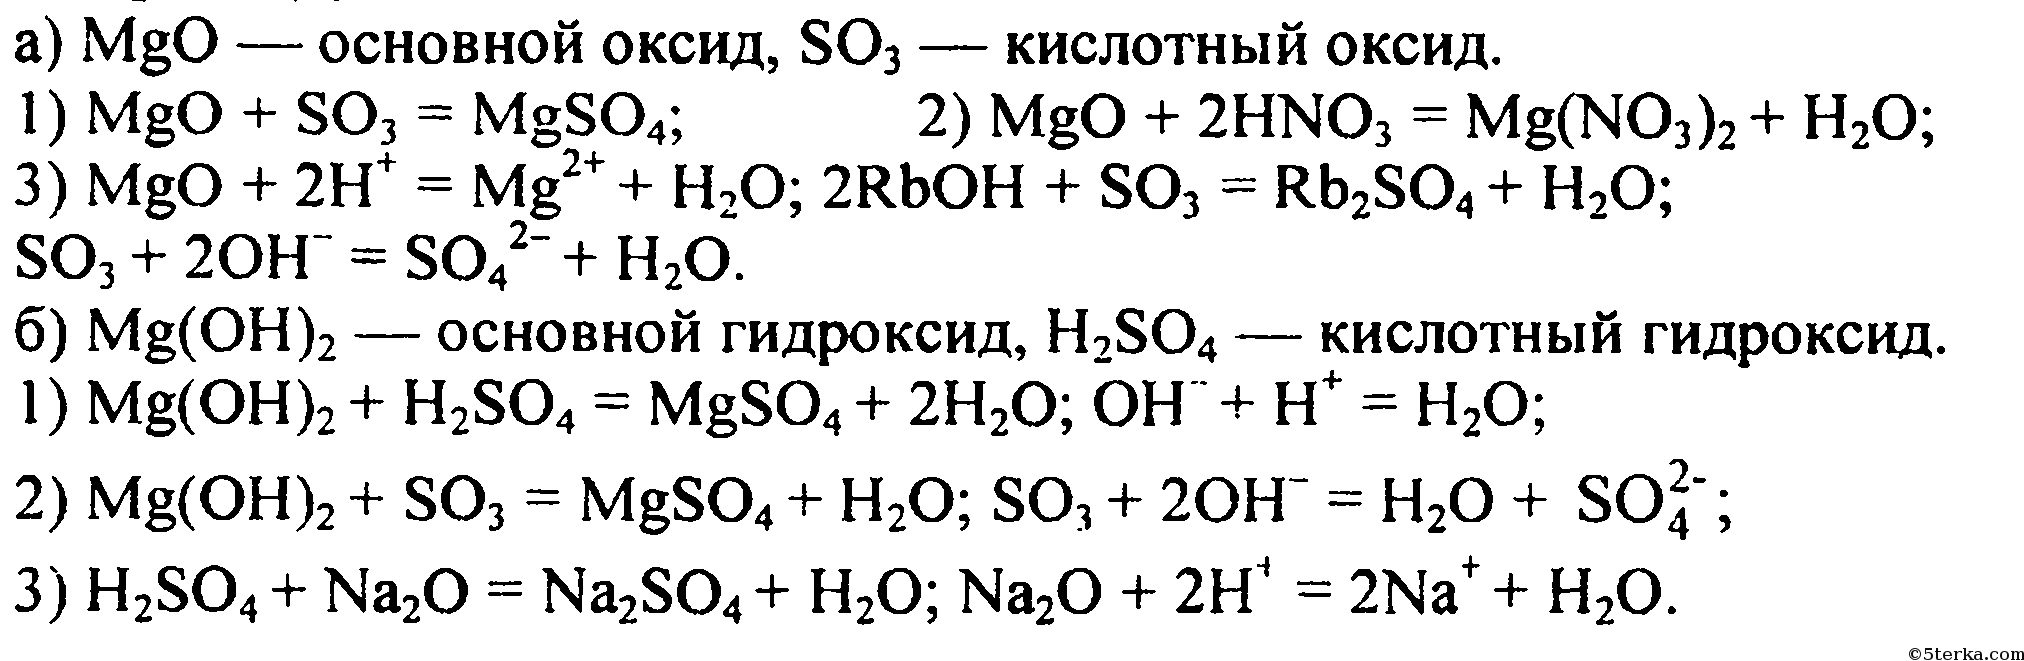 Mgo реагирует с гидроксидом натрия. Уравнения химических реакций MGO И so3. Химические уравнения магний хлор 2. Цепочка реакций с магнием. MGO+h2so4 уравнение реакции.